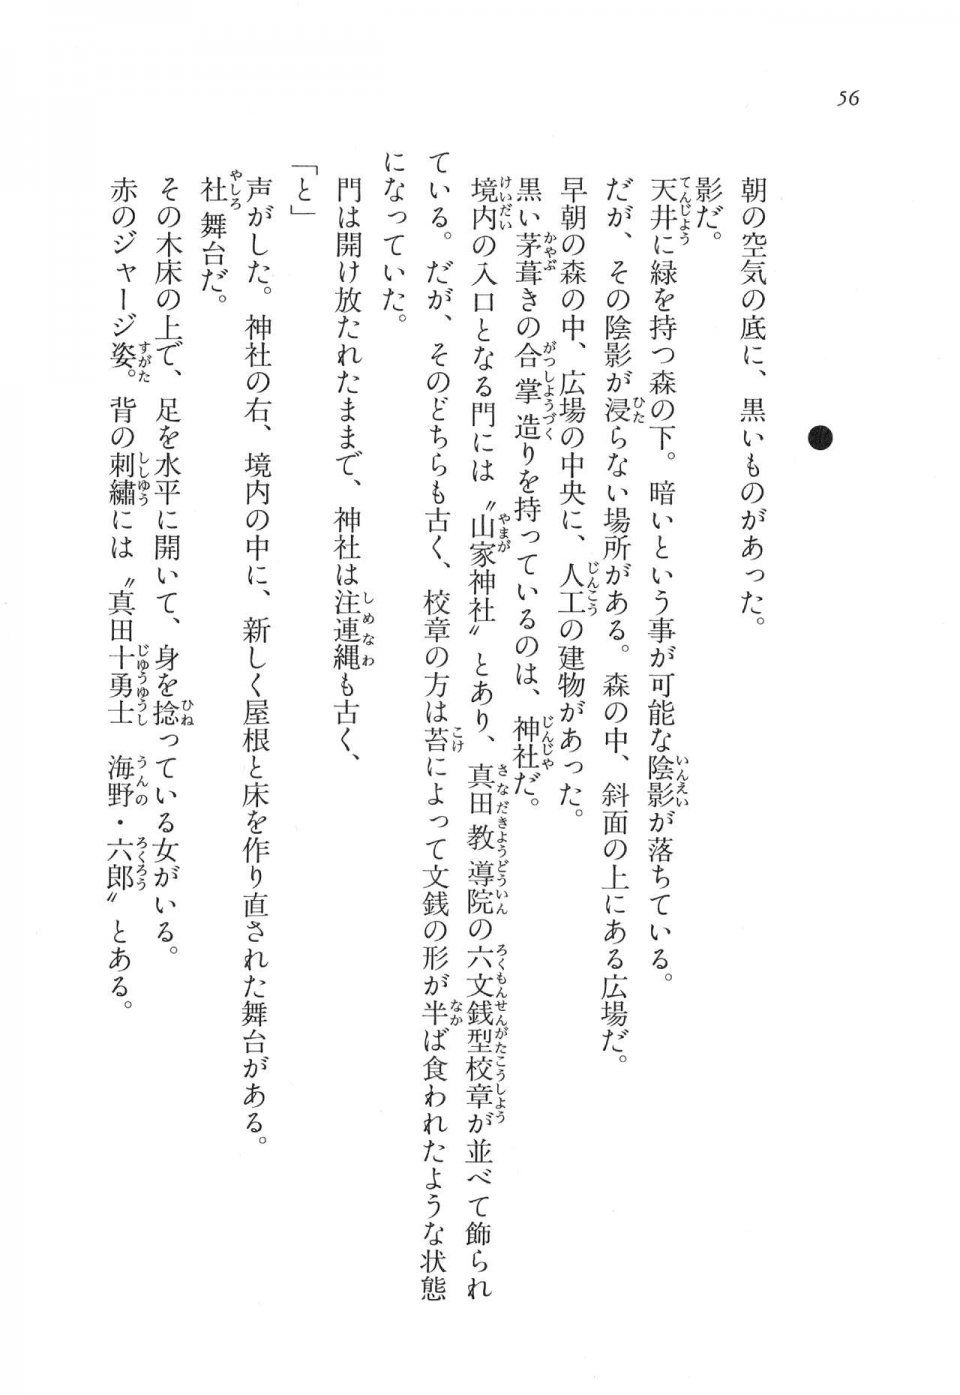 Kyoukai Senjou no Horizon LN Vol 11(5A) - Photo #56